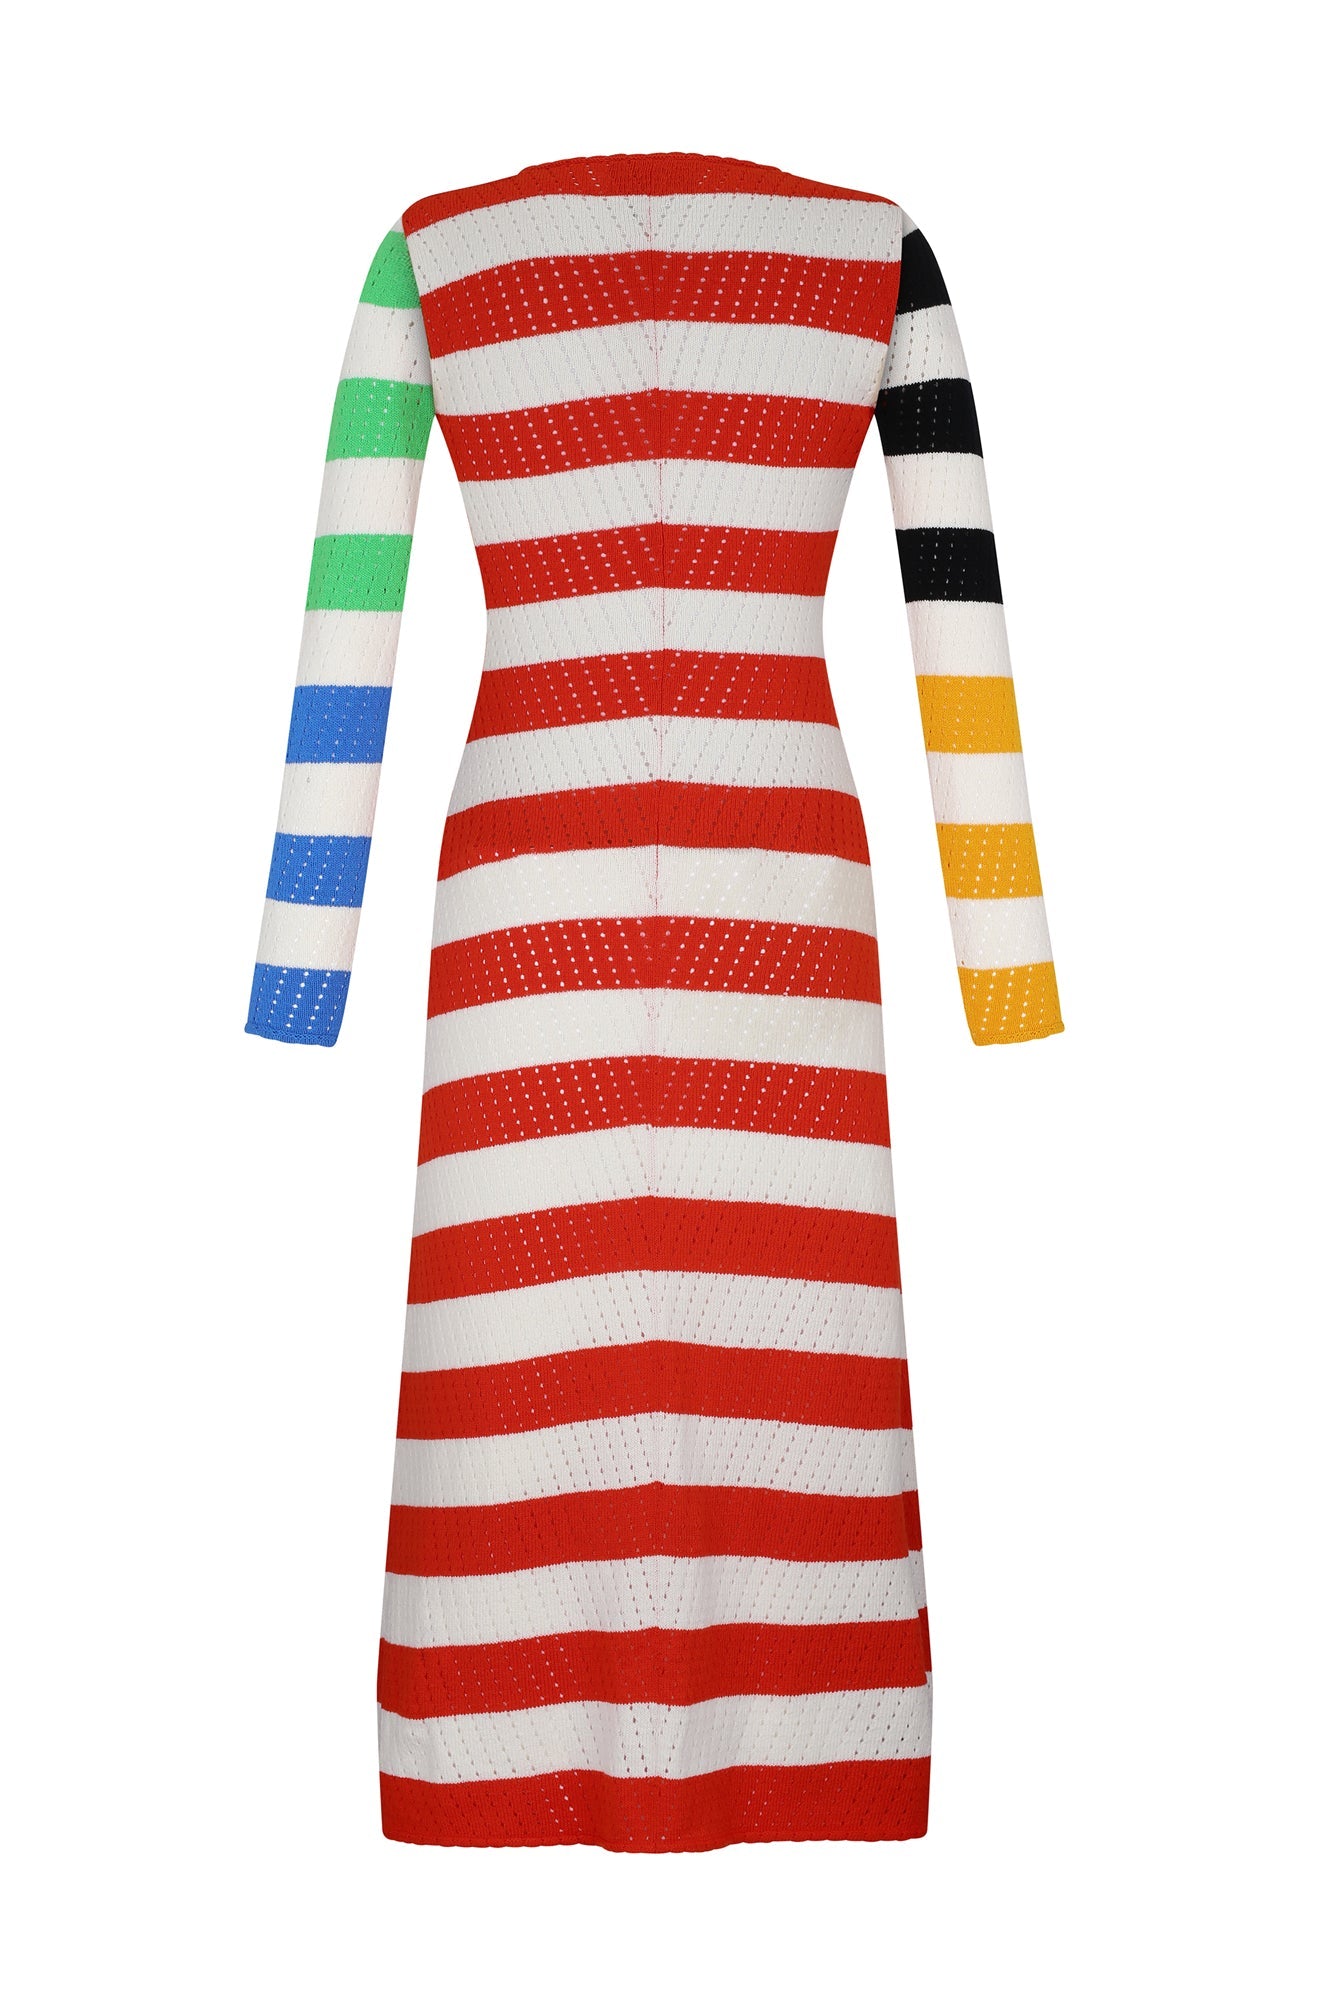 Rocoto Dress in Multicolor Bold Stripes